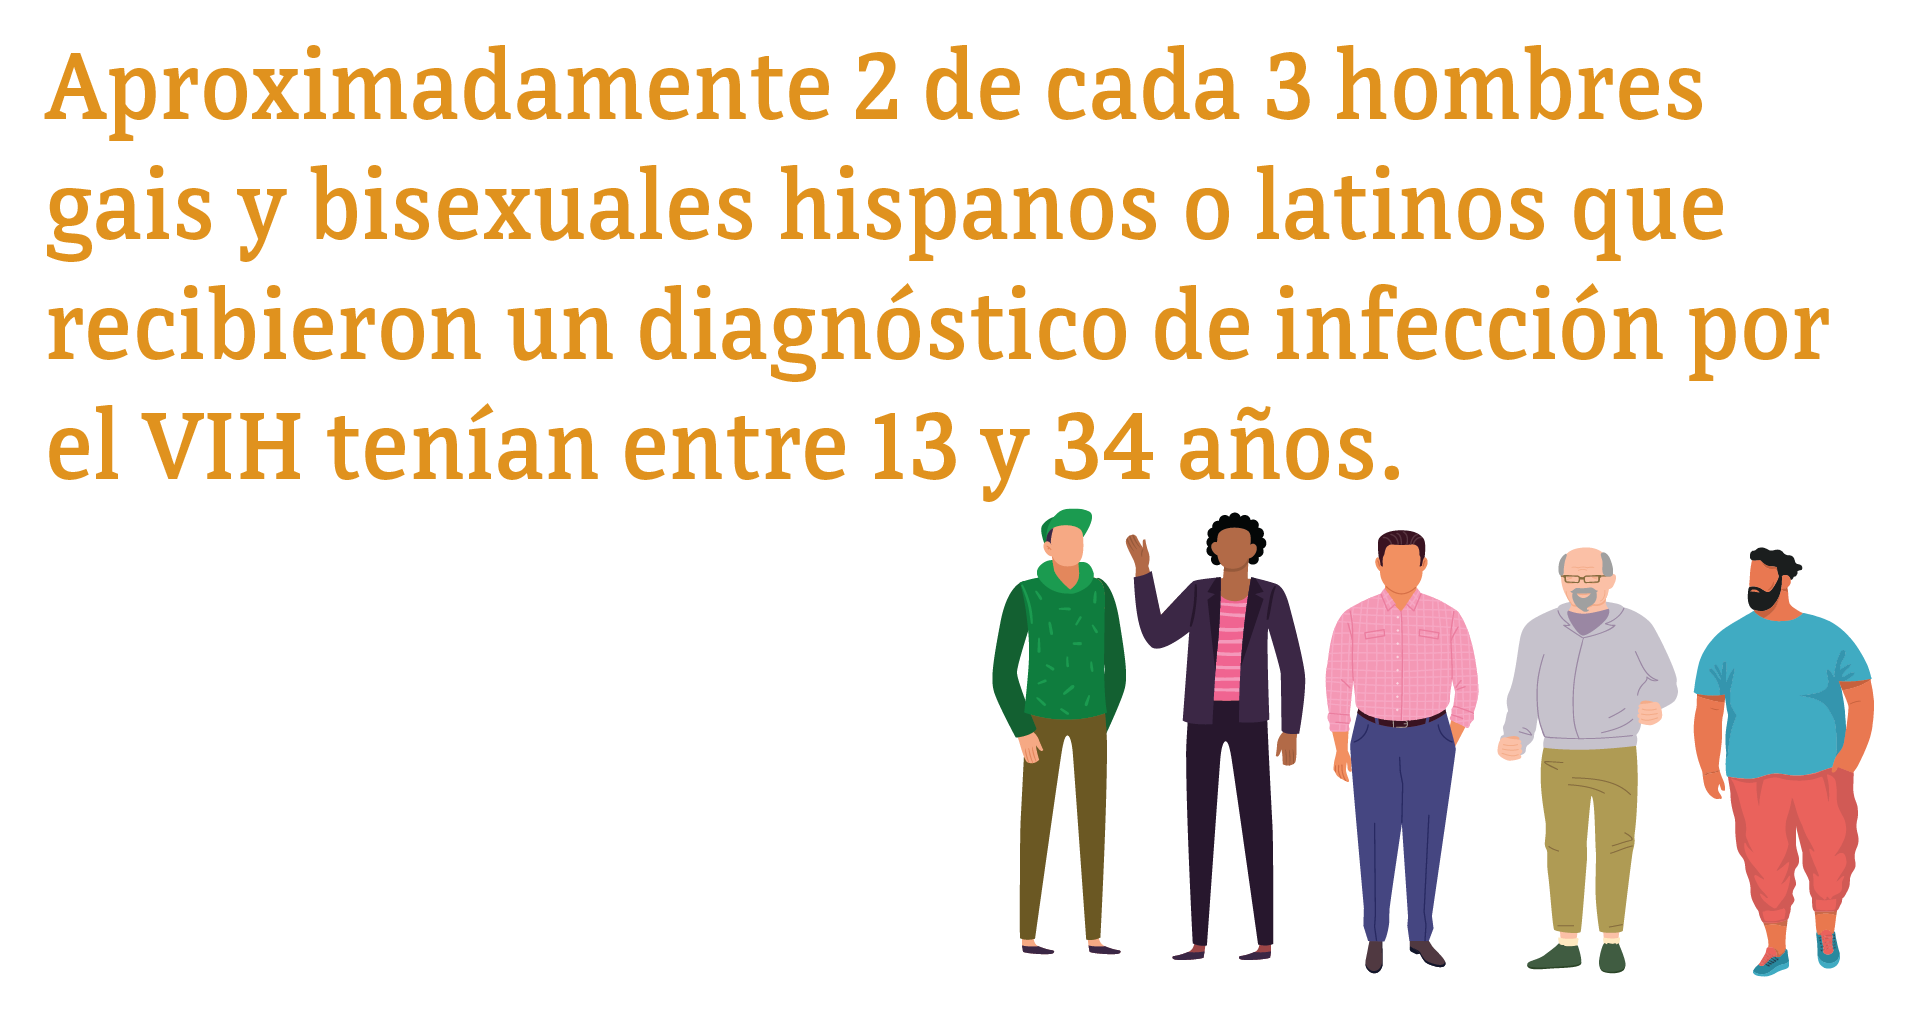 Aproximadamente 2 de cada 3 hombres gais y bisexuales hispanos o latinos que recibieron un diagnóstico de infección por el VIH tenían entre 13 y 34 años.